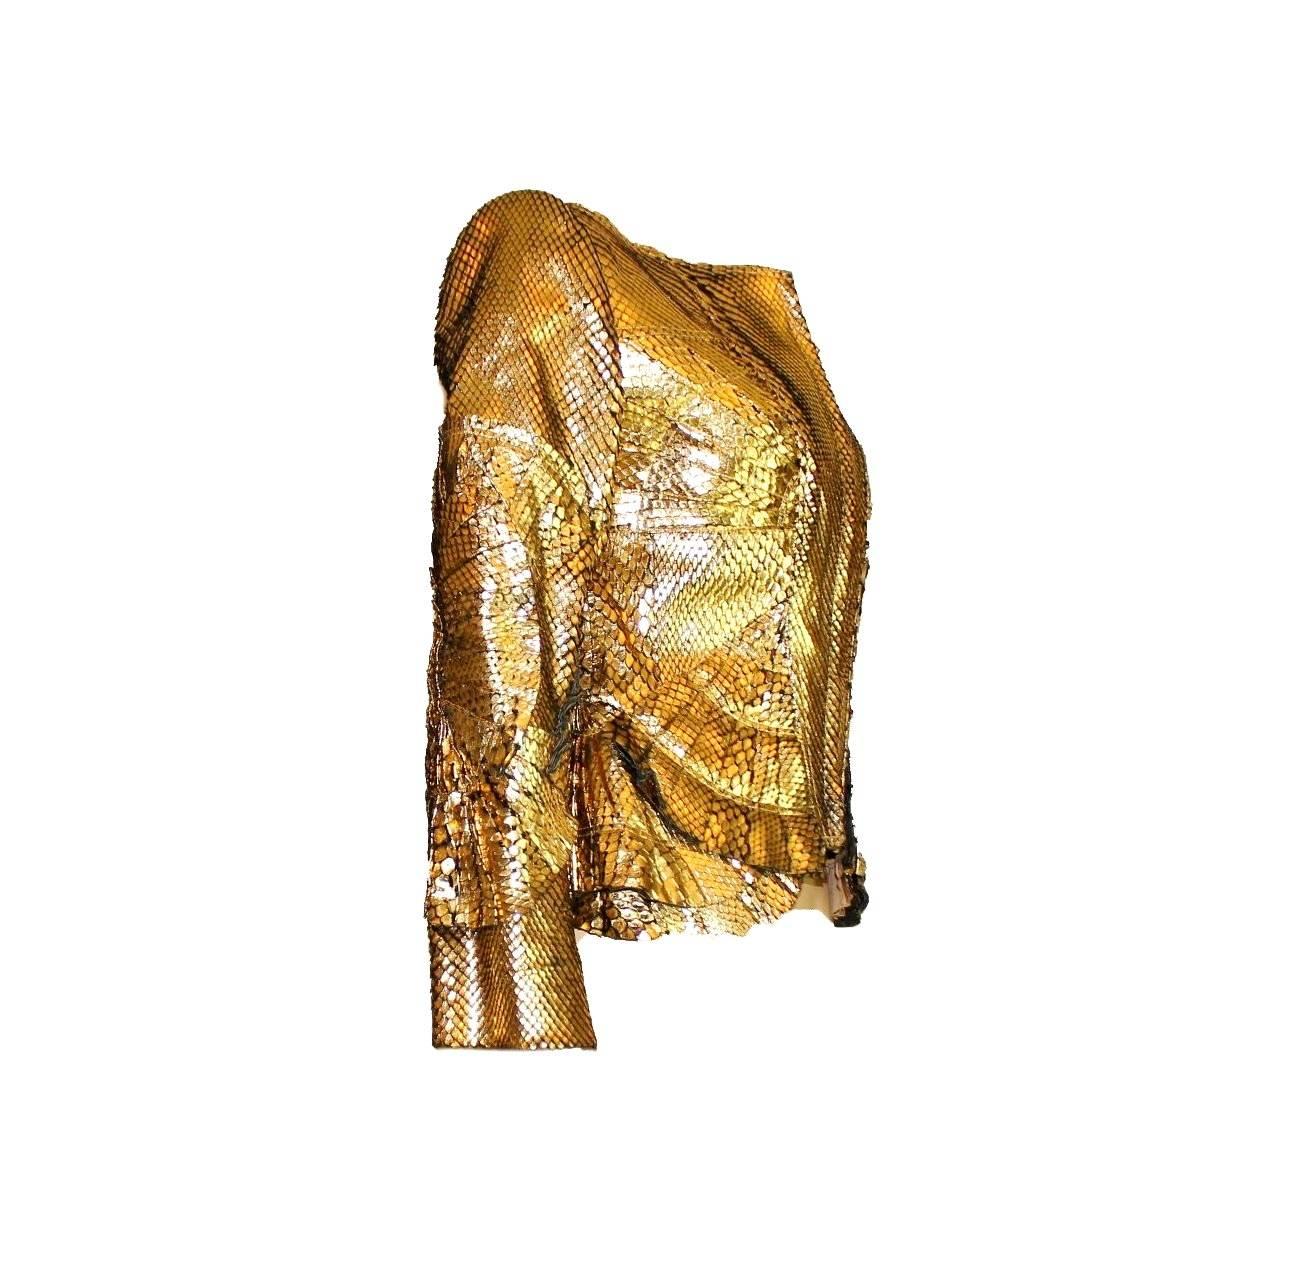 Insolite veste Gucci en peau dorée provenant de la dernière collection d'été de Tom Ford pour Gucci en 2004

Une véritable pièce de collection montrée lors du défilé S/S 2004 ainsi que dans la campagne publicitaire de Gucci. Une des 30 pièces